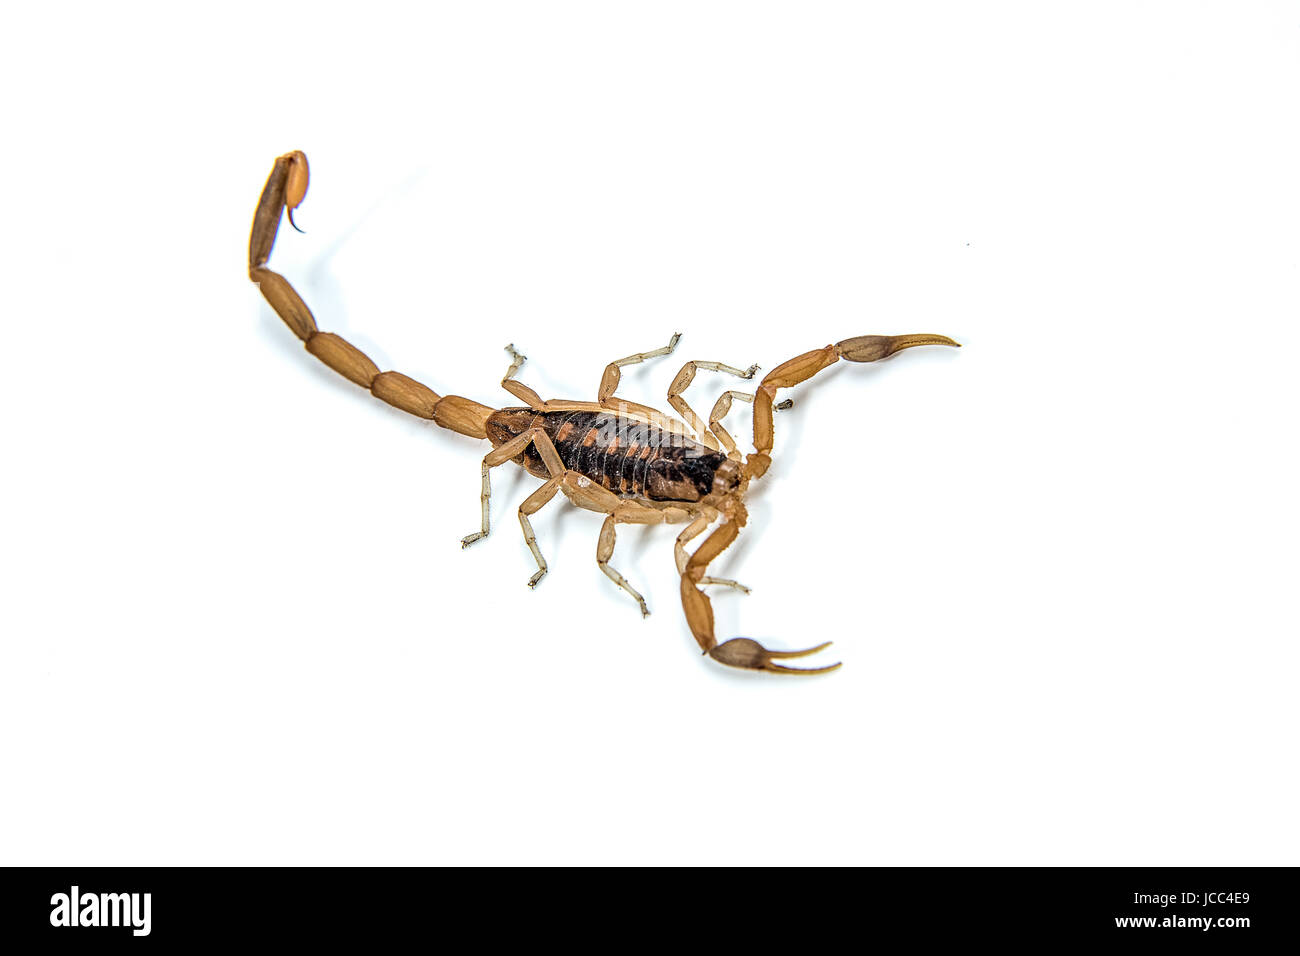 Un petit scorpion venimeux ,Centruroides vittatus, isolé sur un fond blanc. Banque D'Images